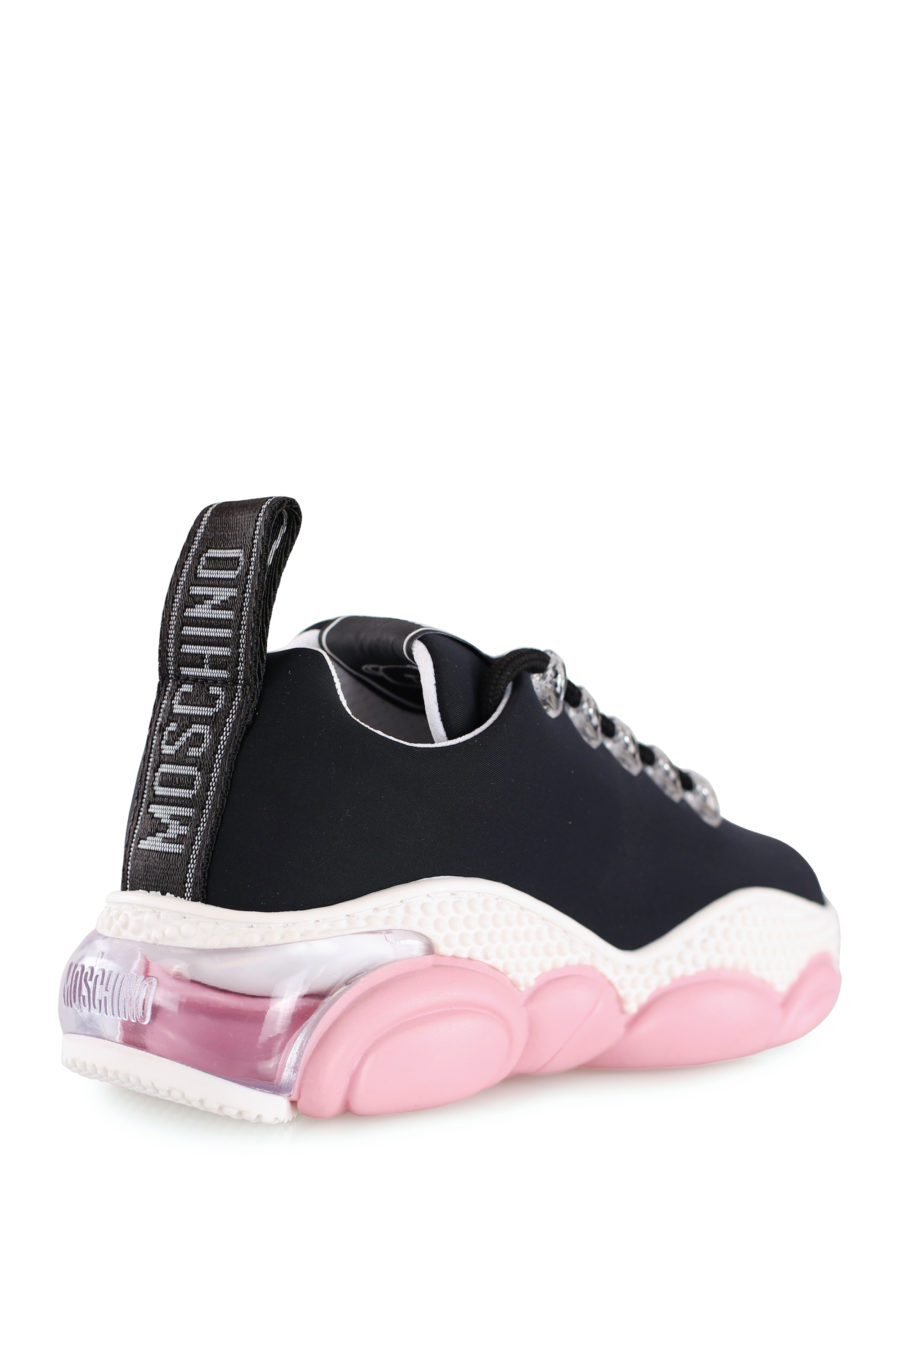 Zapatillas negras con suela color rosa - IMG 8133 copia